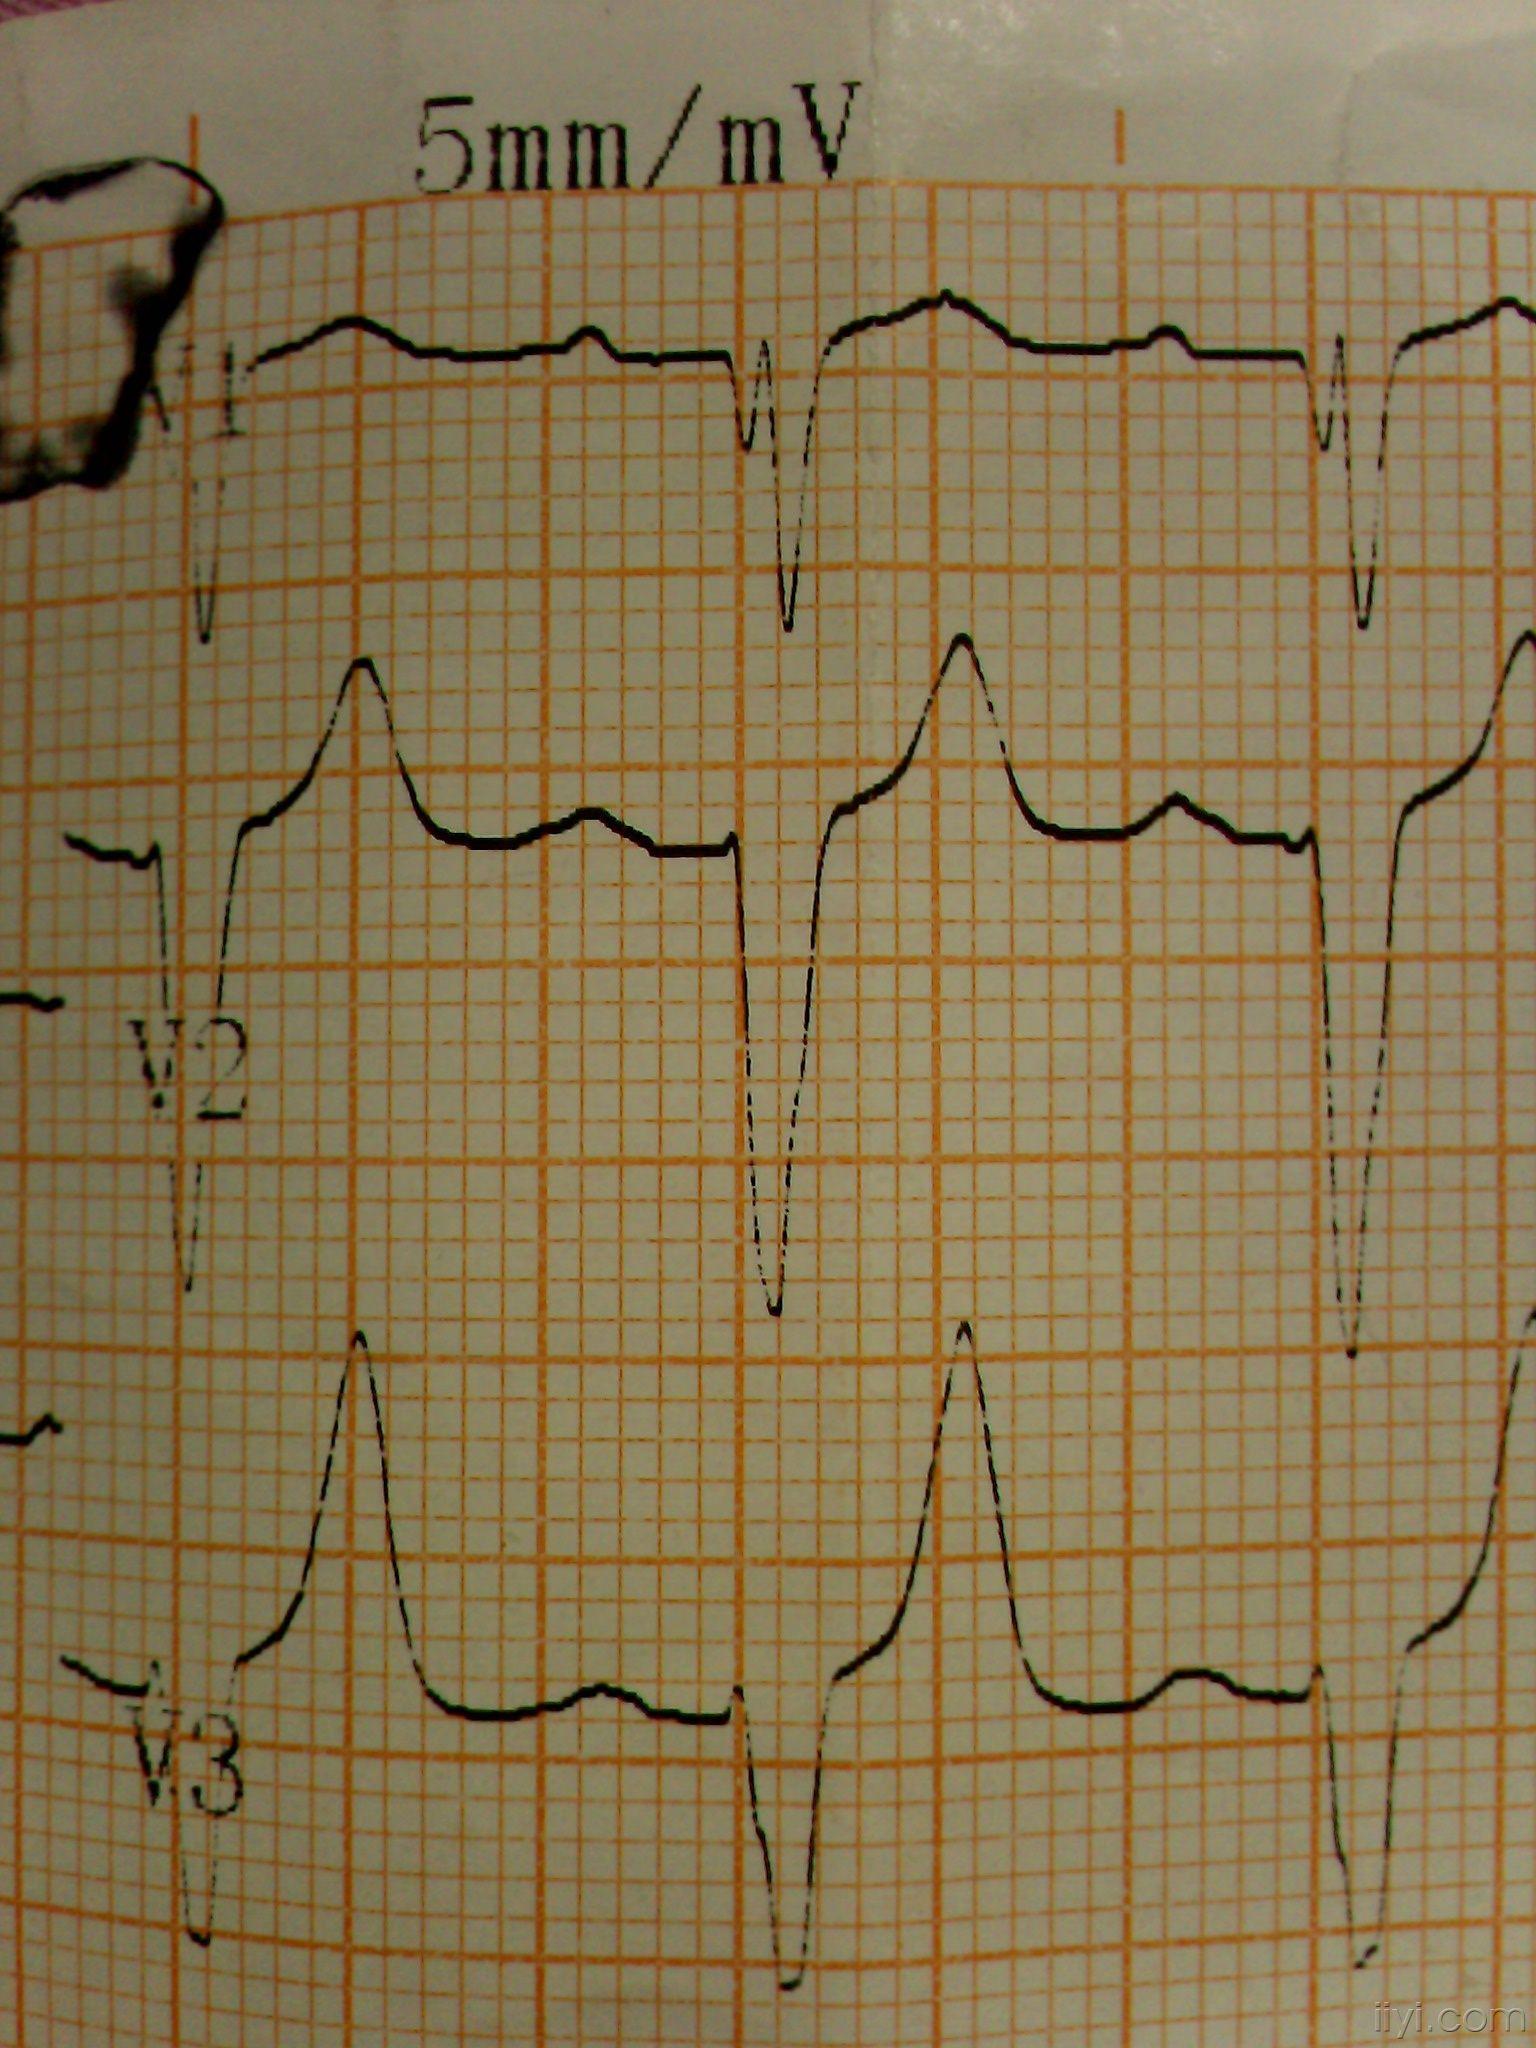 心电图v1呈m型图片